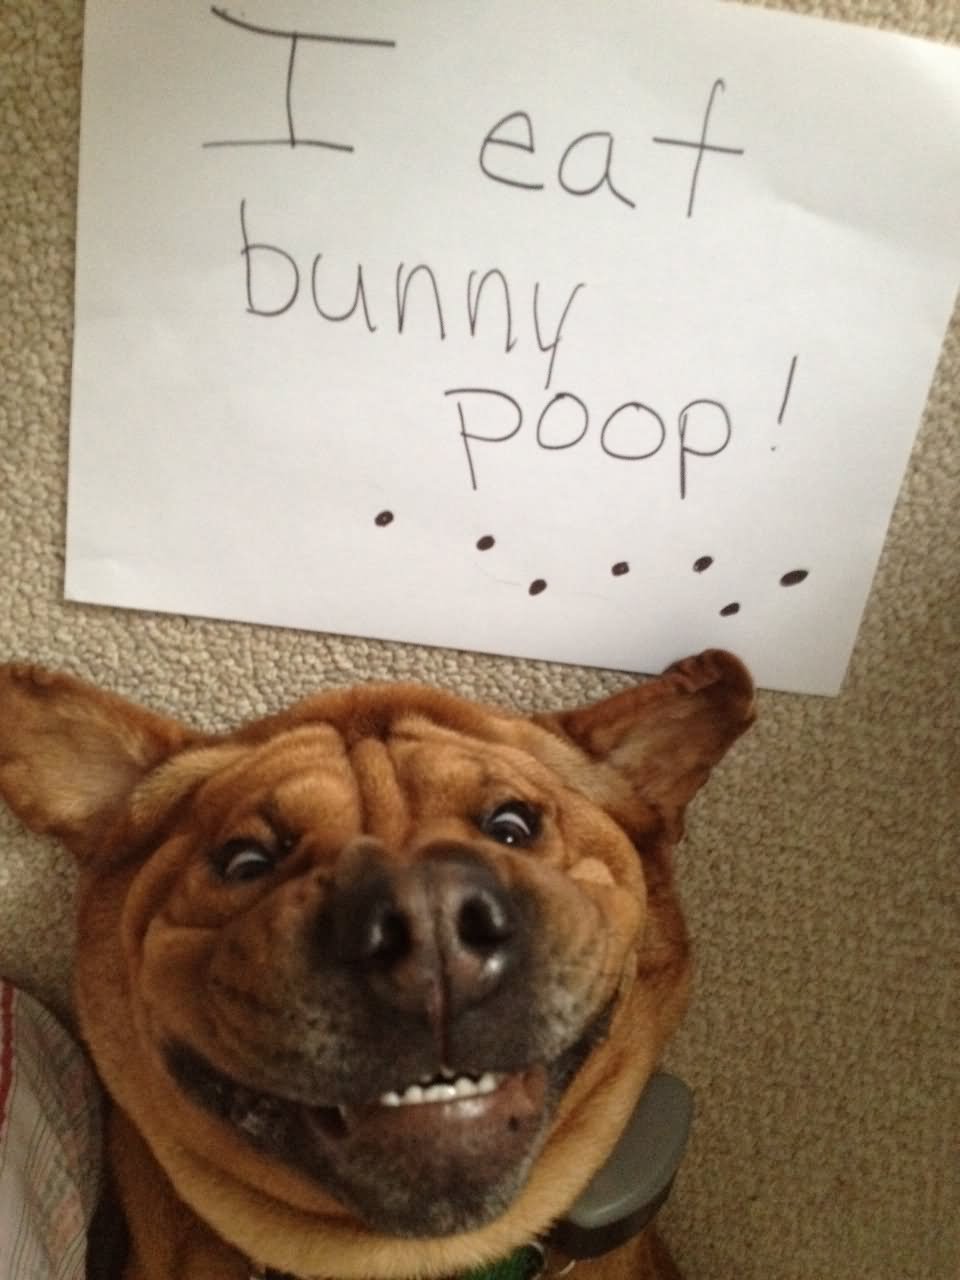 I Eat Bunny Poop Funny Dog Image